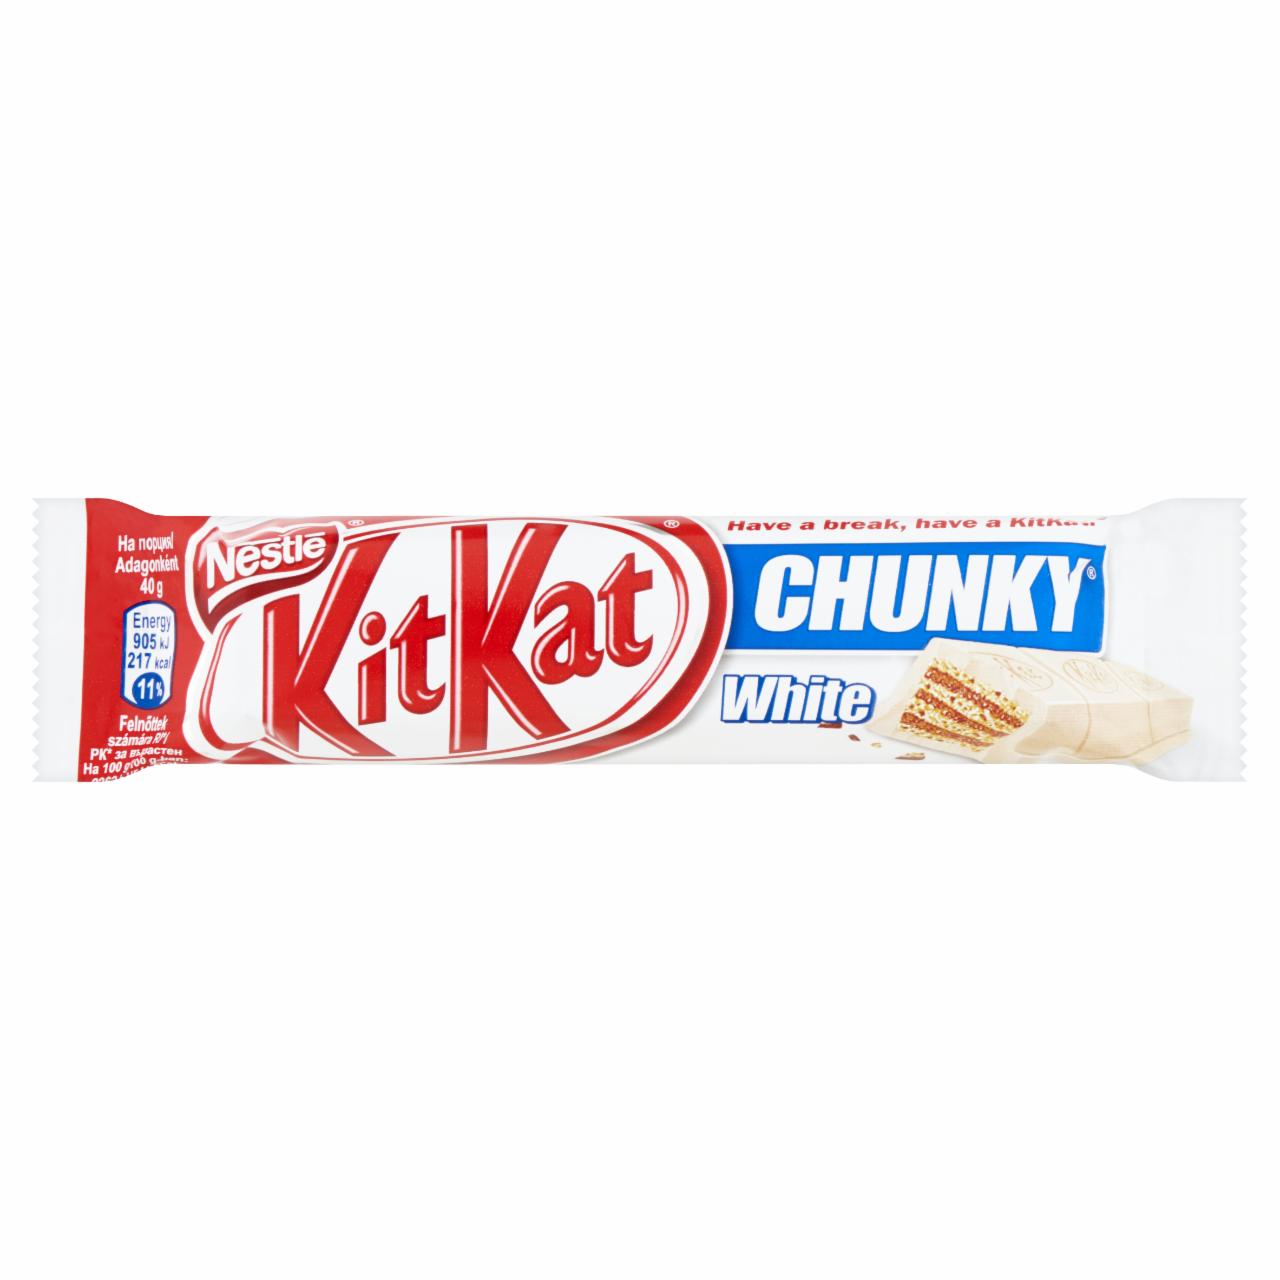 Képek - KitKat Chunky ropogós ostya fehér csokoládéban 40 g